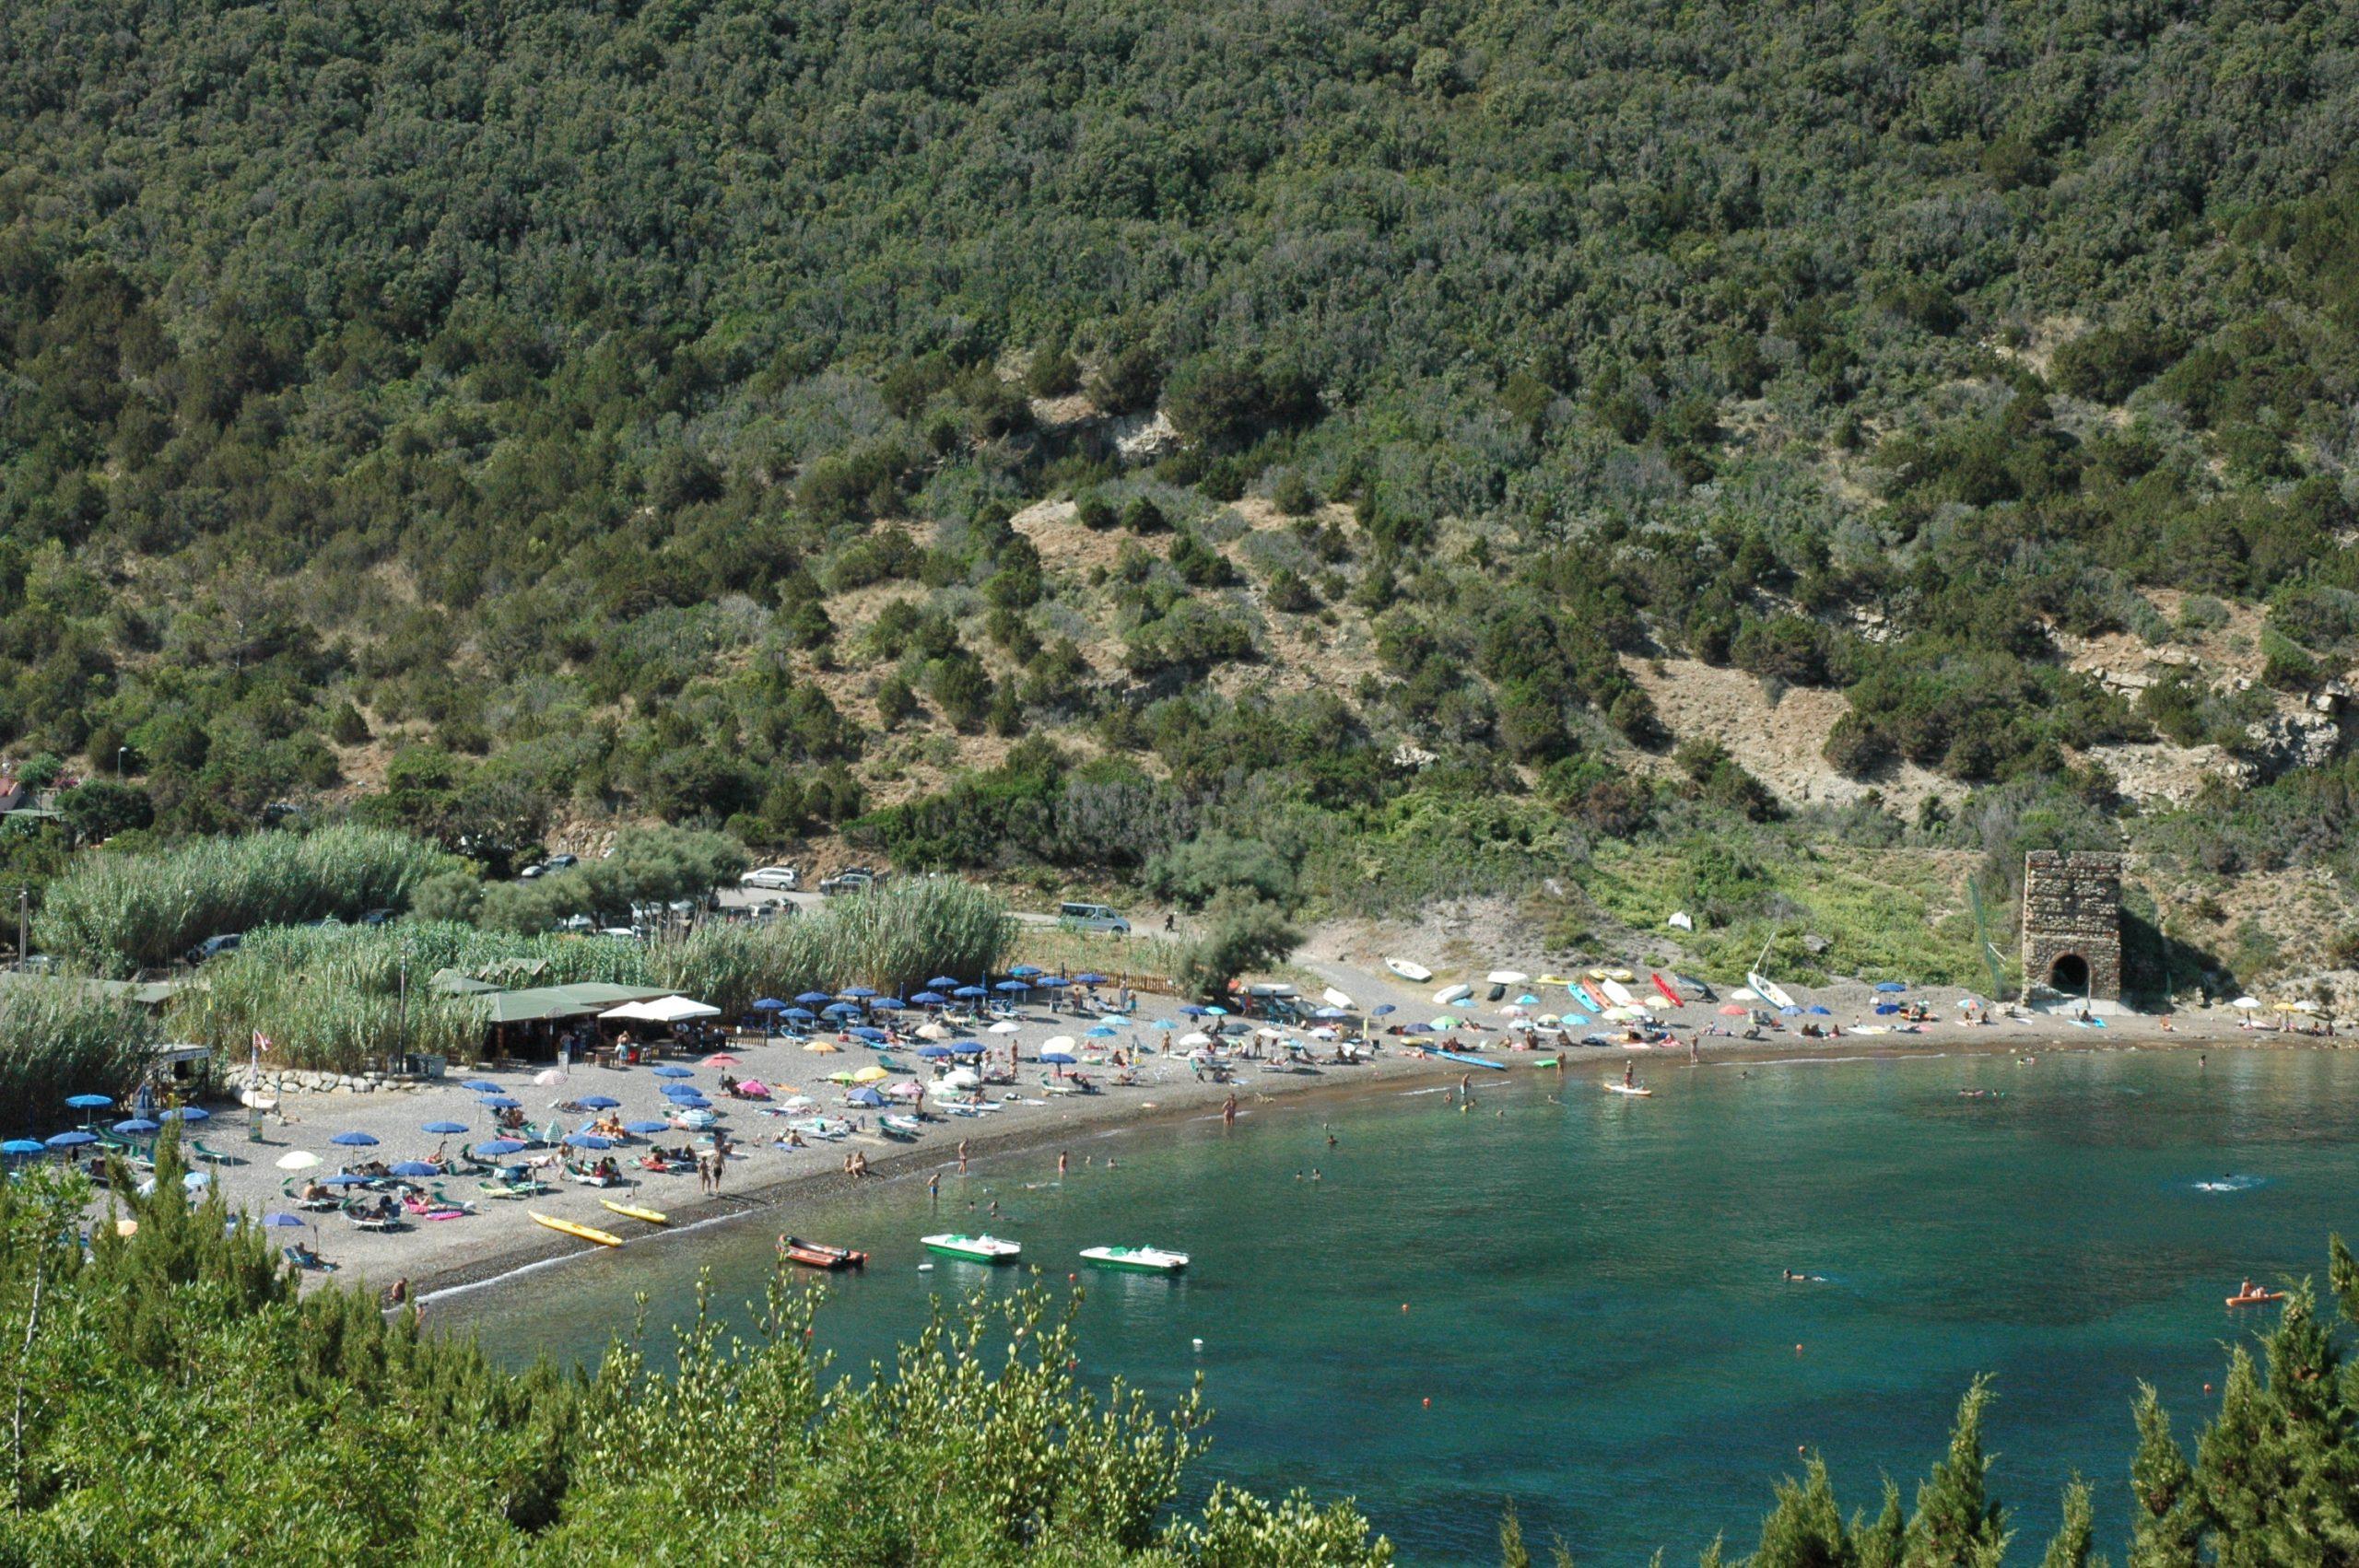 Der Campingplatz Sole e Mare liegt direkt am Meer. Hier ist ein Strand zu sehen.